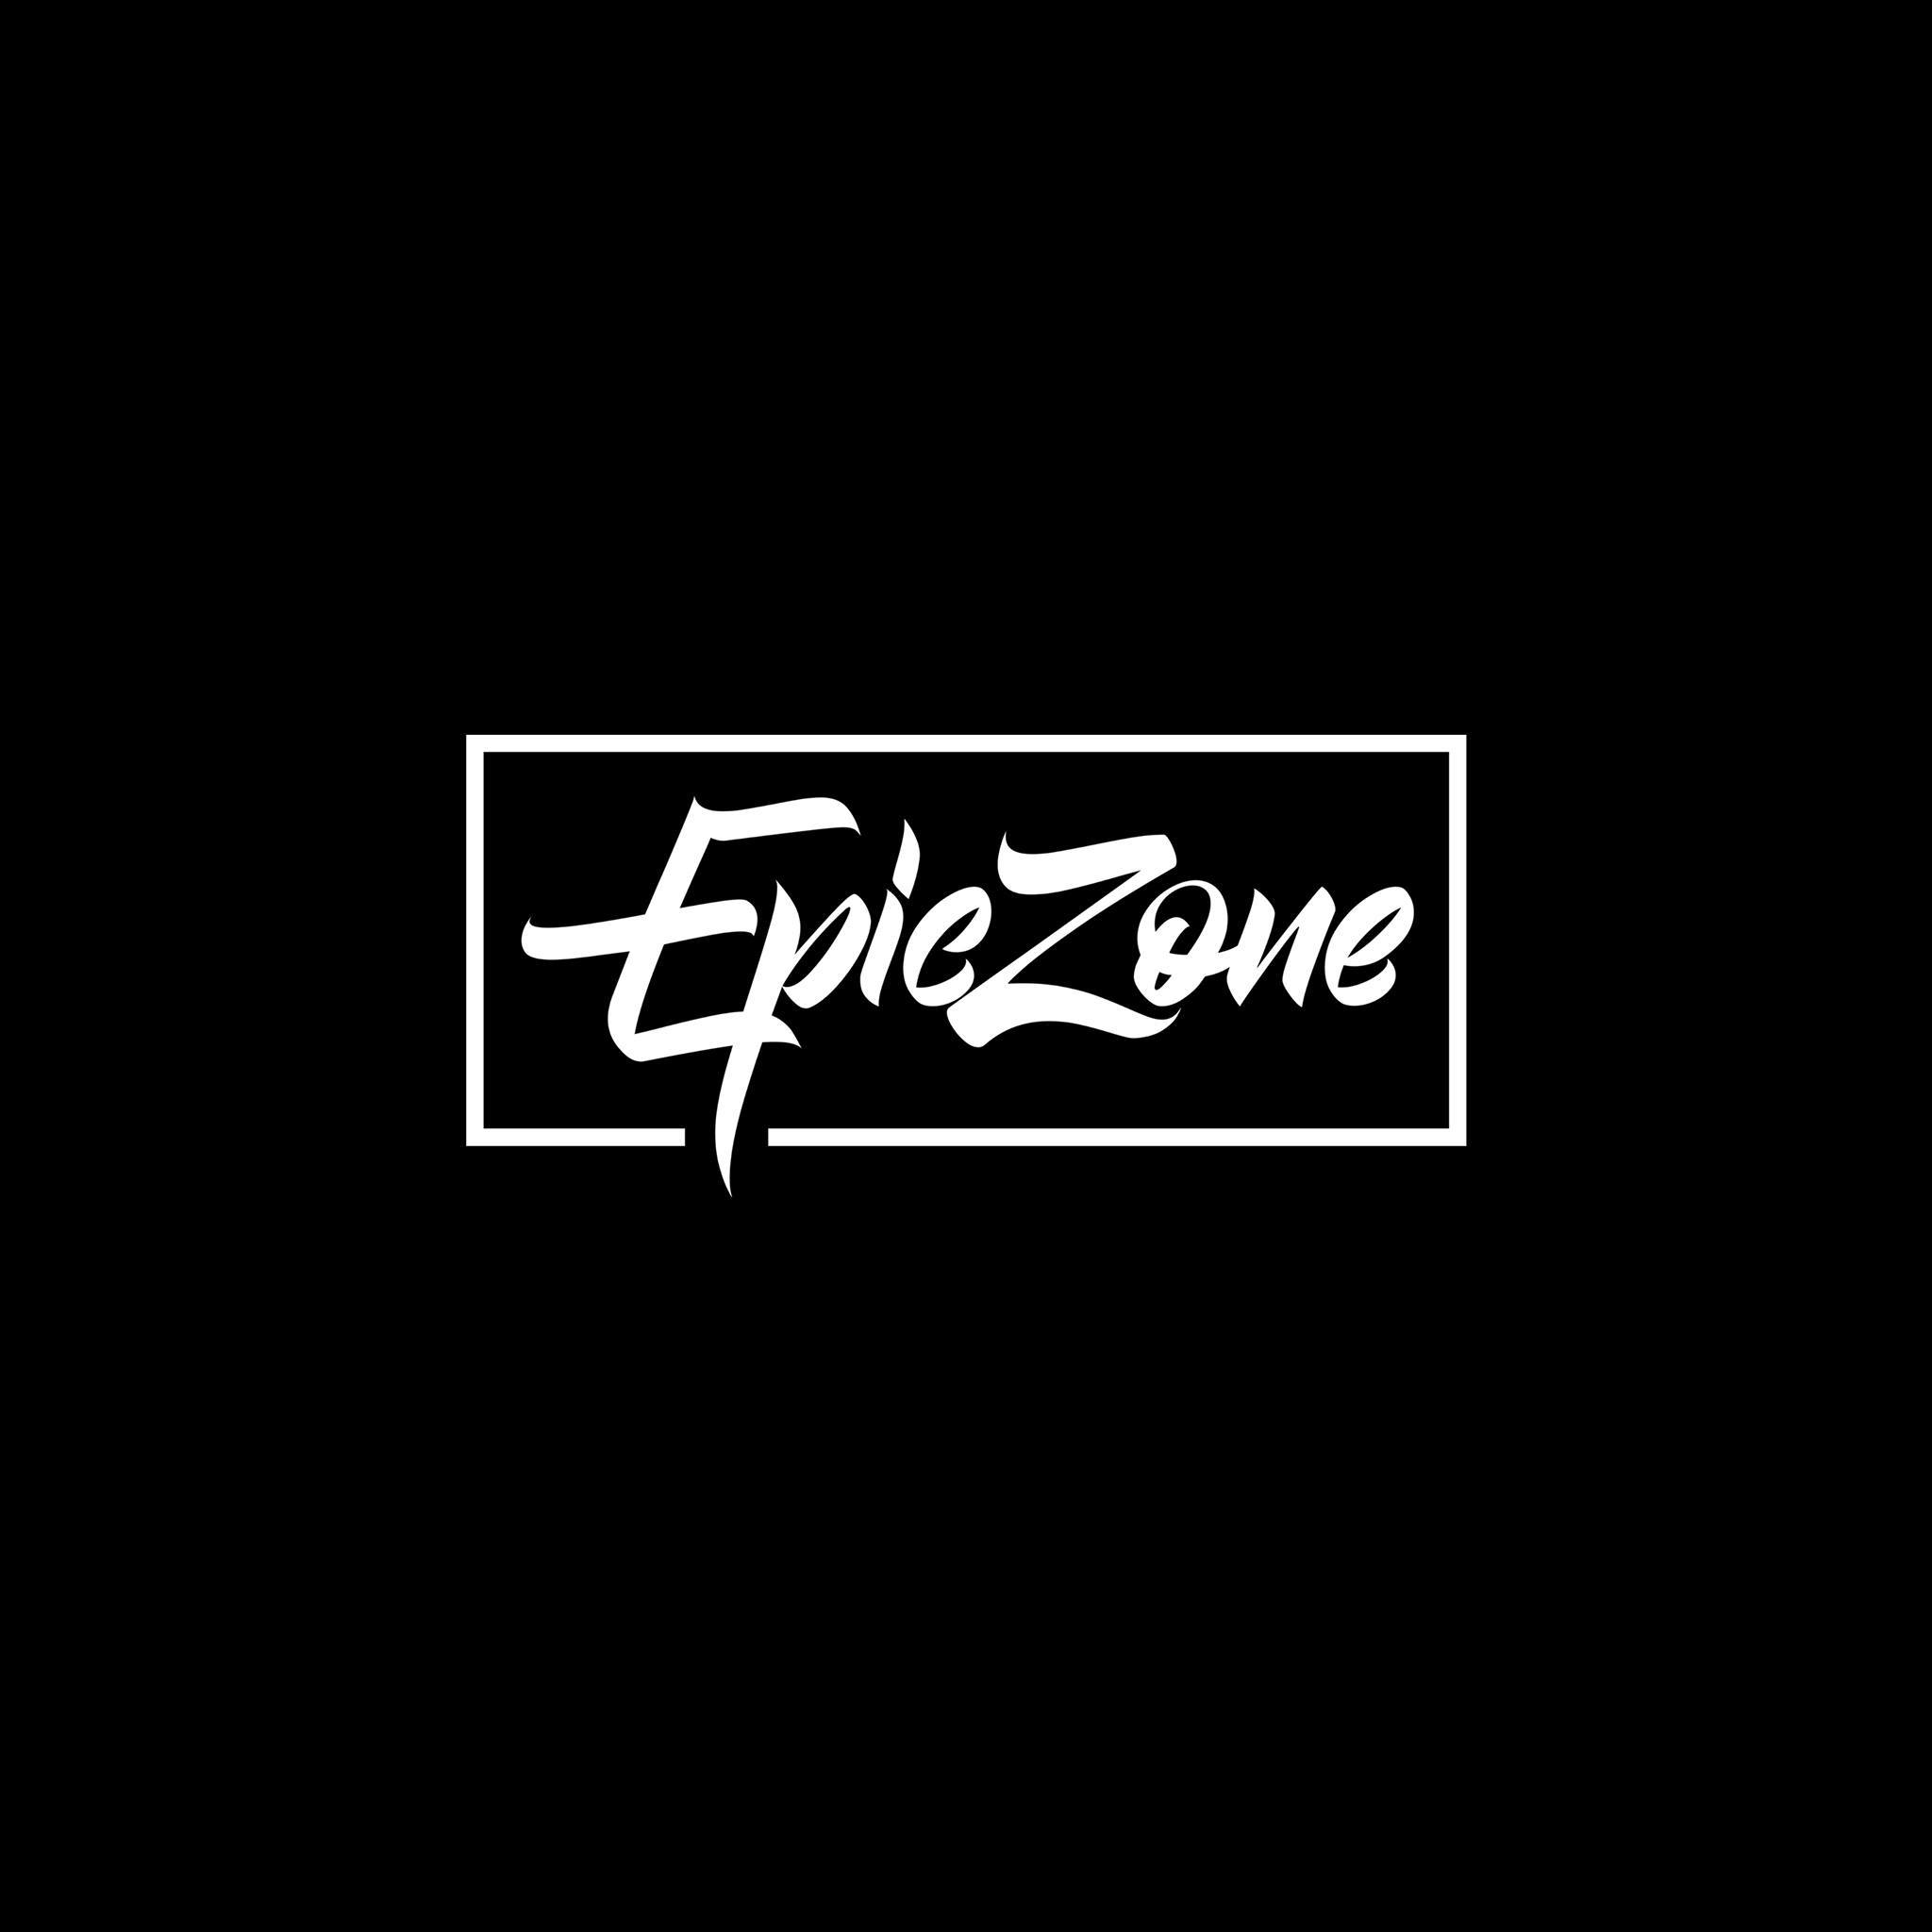 EpicZone Studios & Production